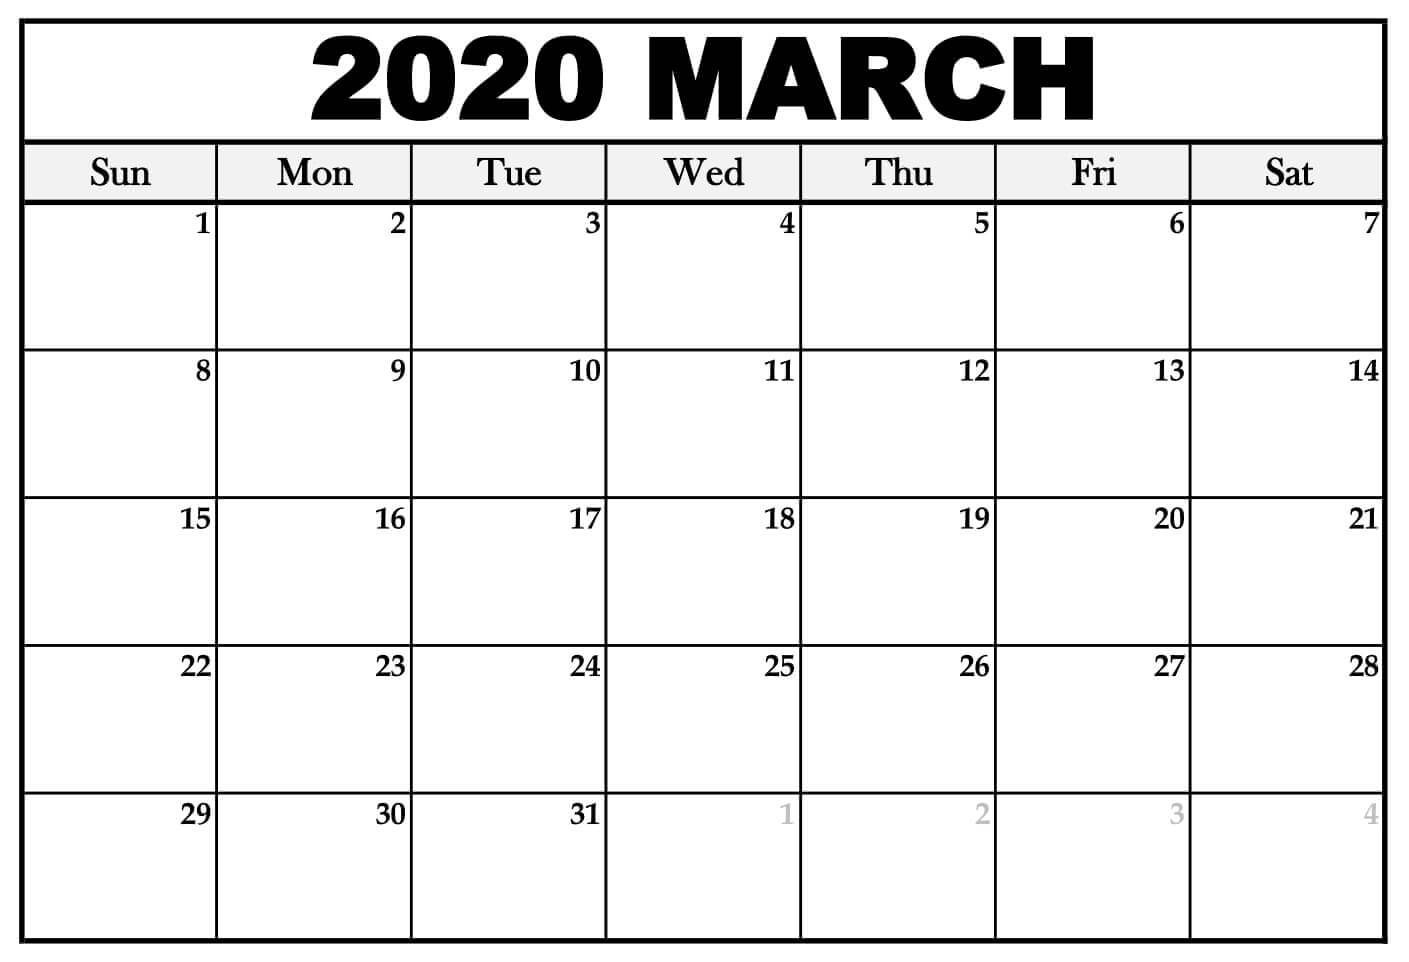 March 2020 Calendar Canada With Public Holidays - 2019